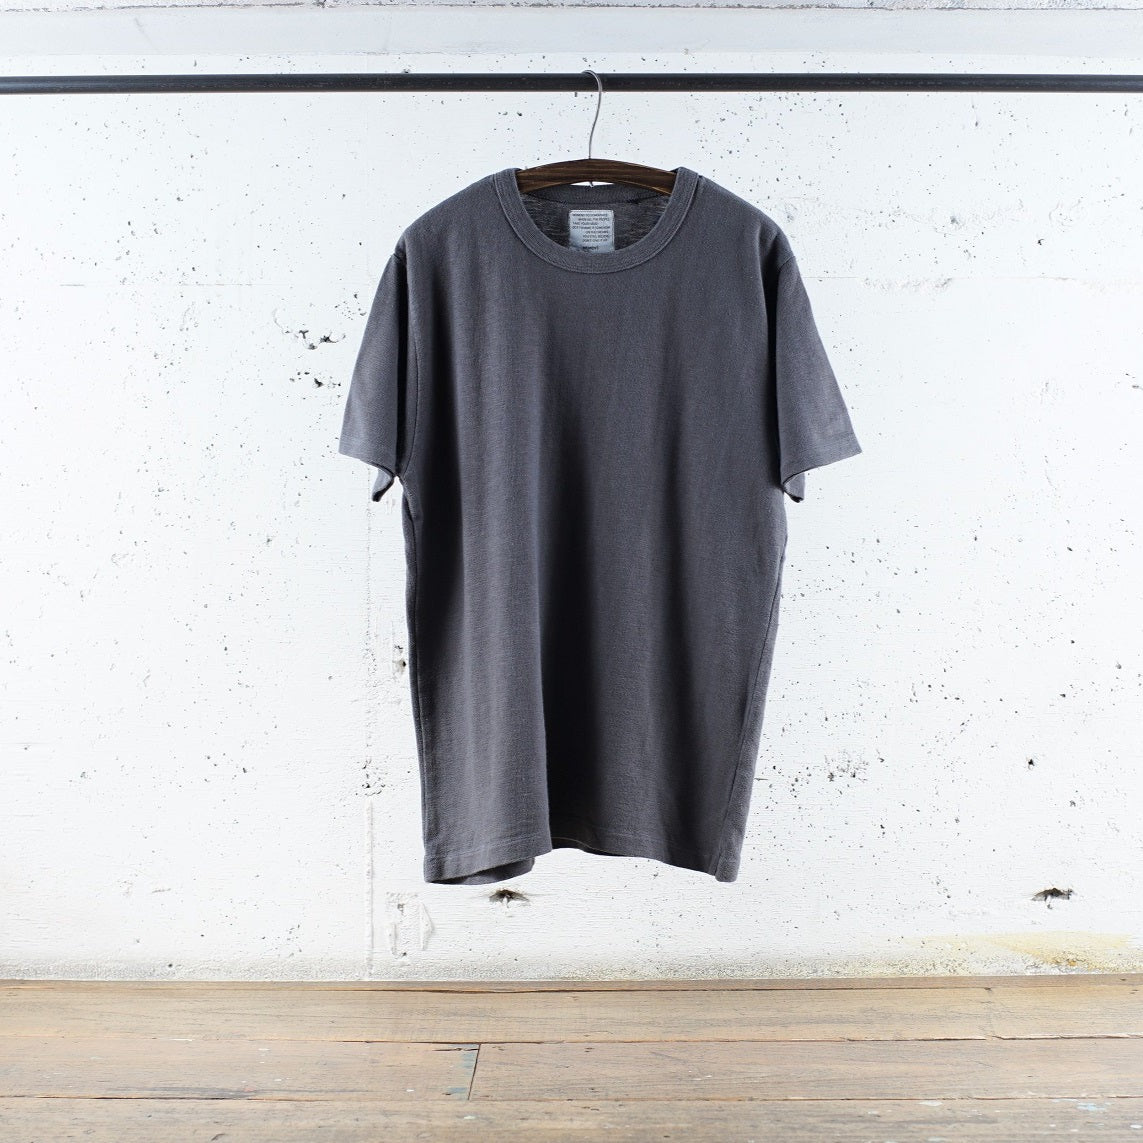 ディバイスファクトリー | ロングセラー Tシャツ メンズ レディース 唯一無二のカラーと着心地 Gray Navy / S